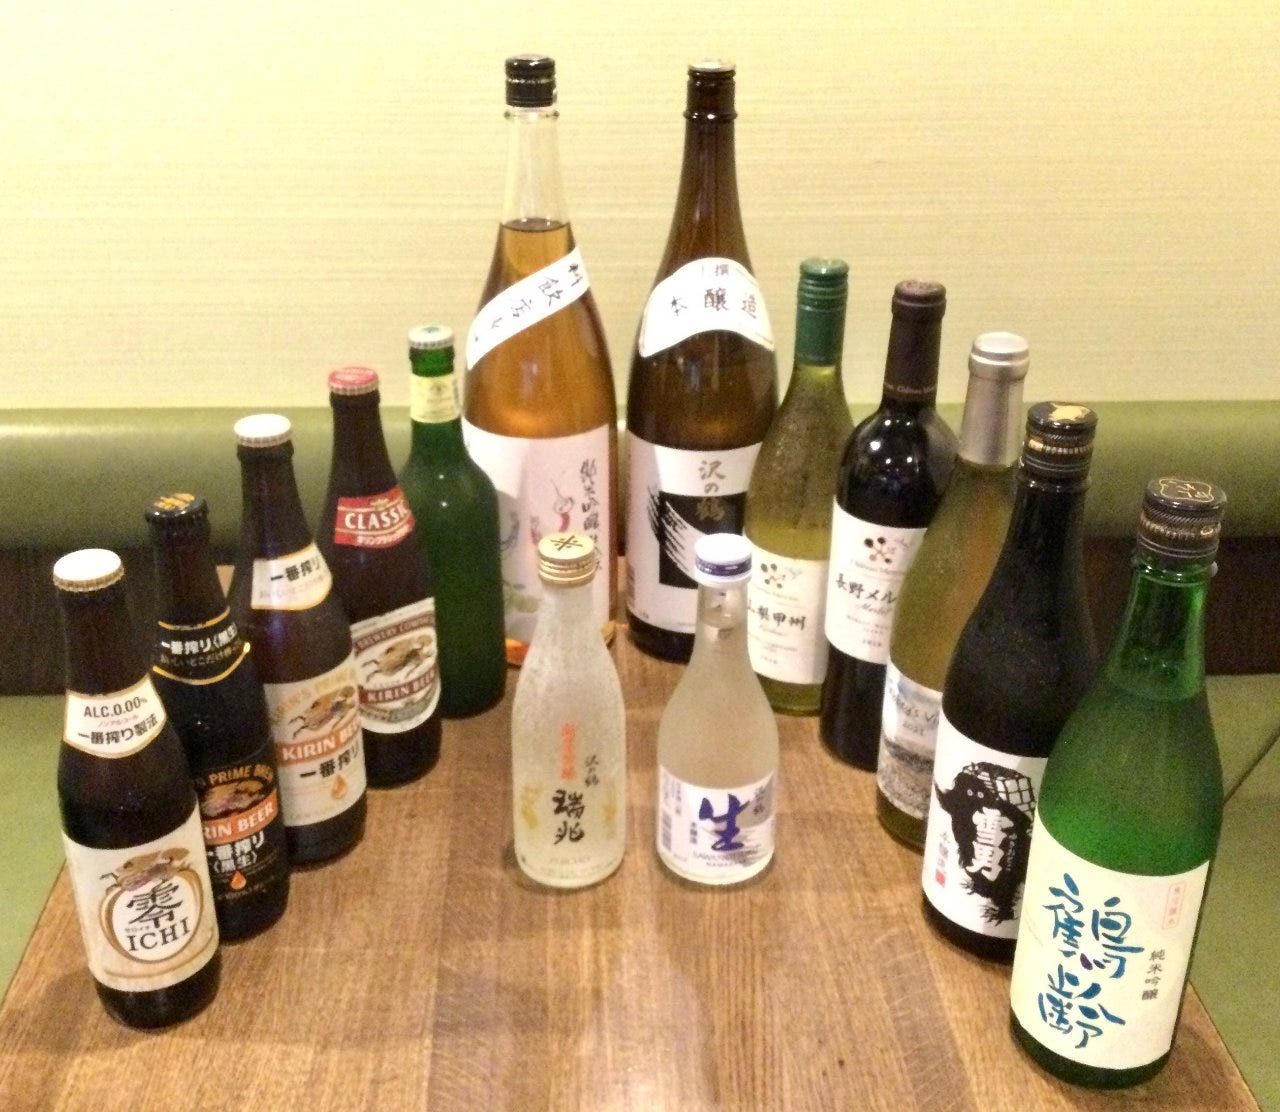 ビール、日本酒、焼酎、ワインと取り揃えております。